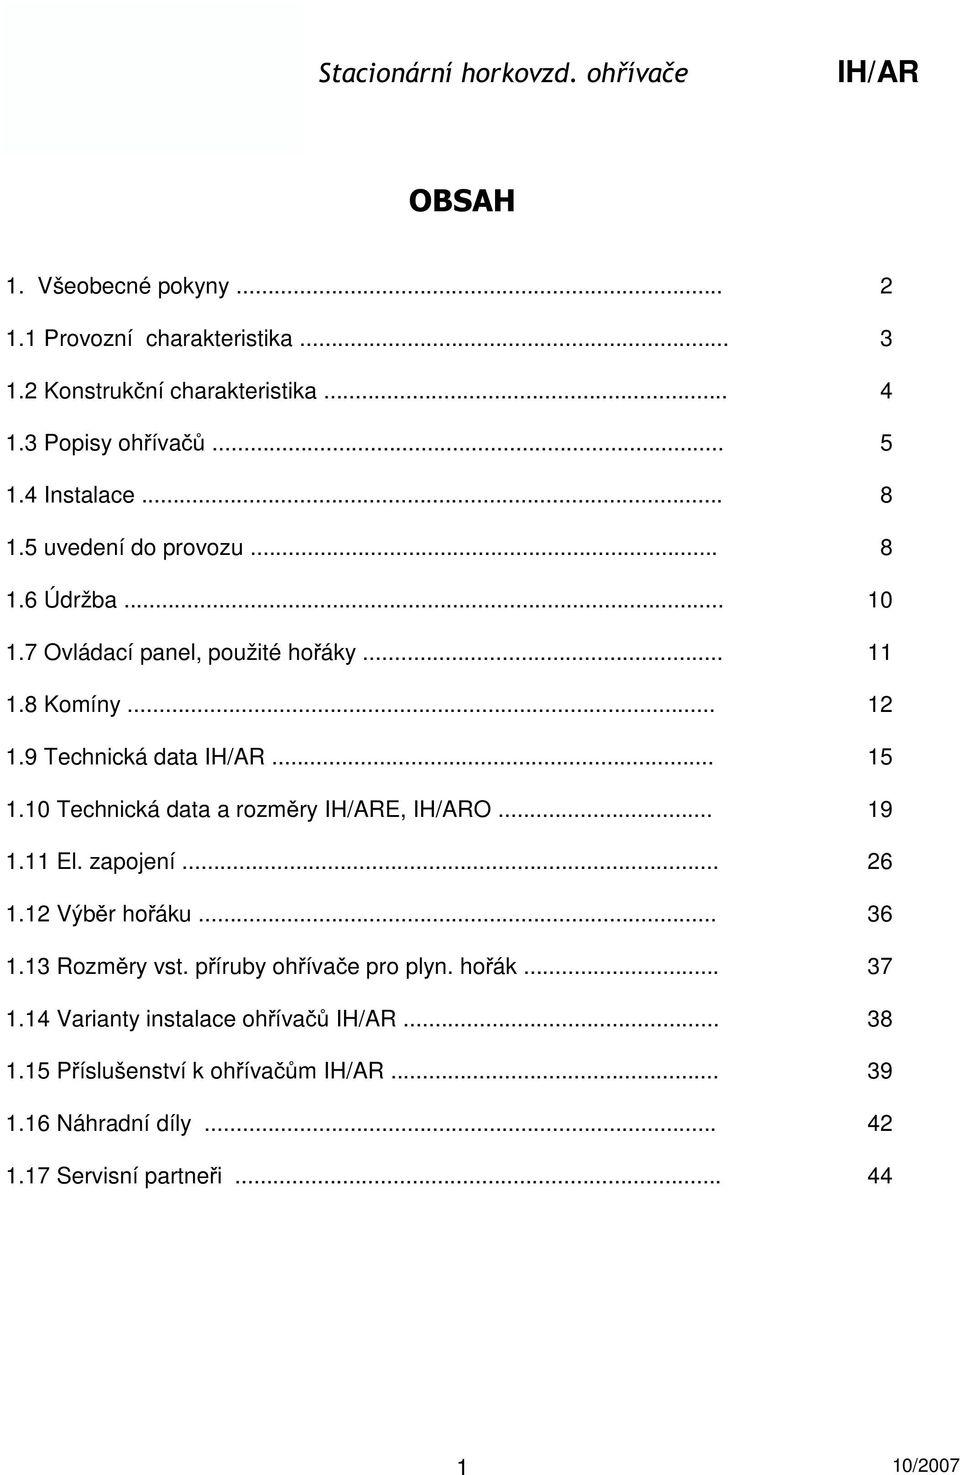 STACIONÁRNÍ HORKOVZDUŠNÉ OHŘÍVAČE BLOWTHERM MODELY IH/AR - PDF Stažení  zdarma